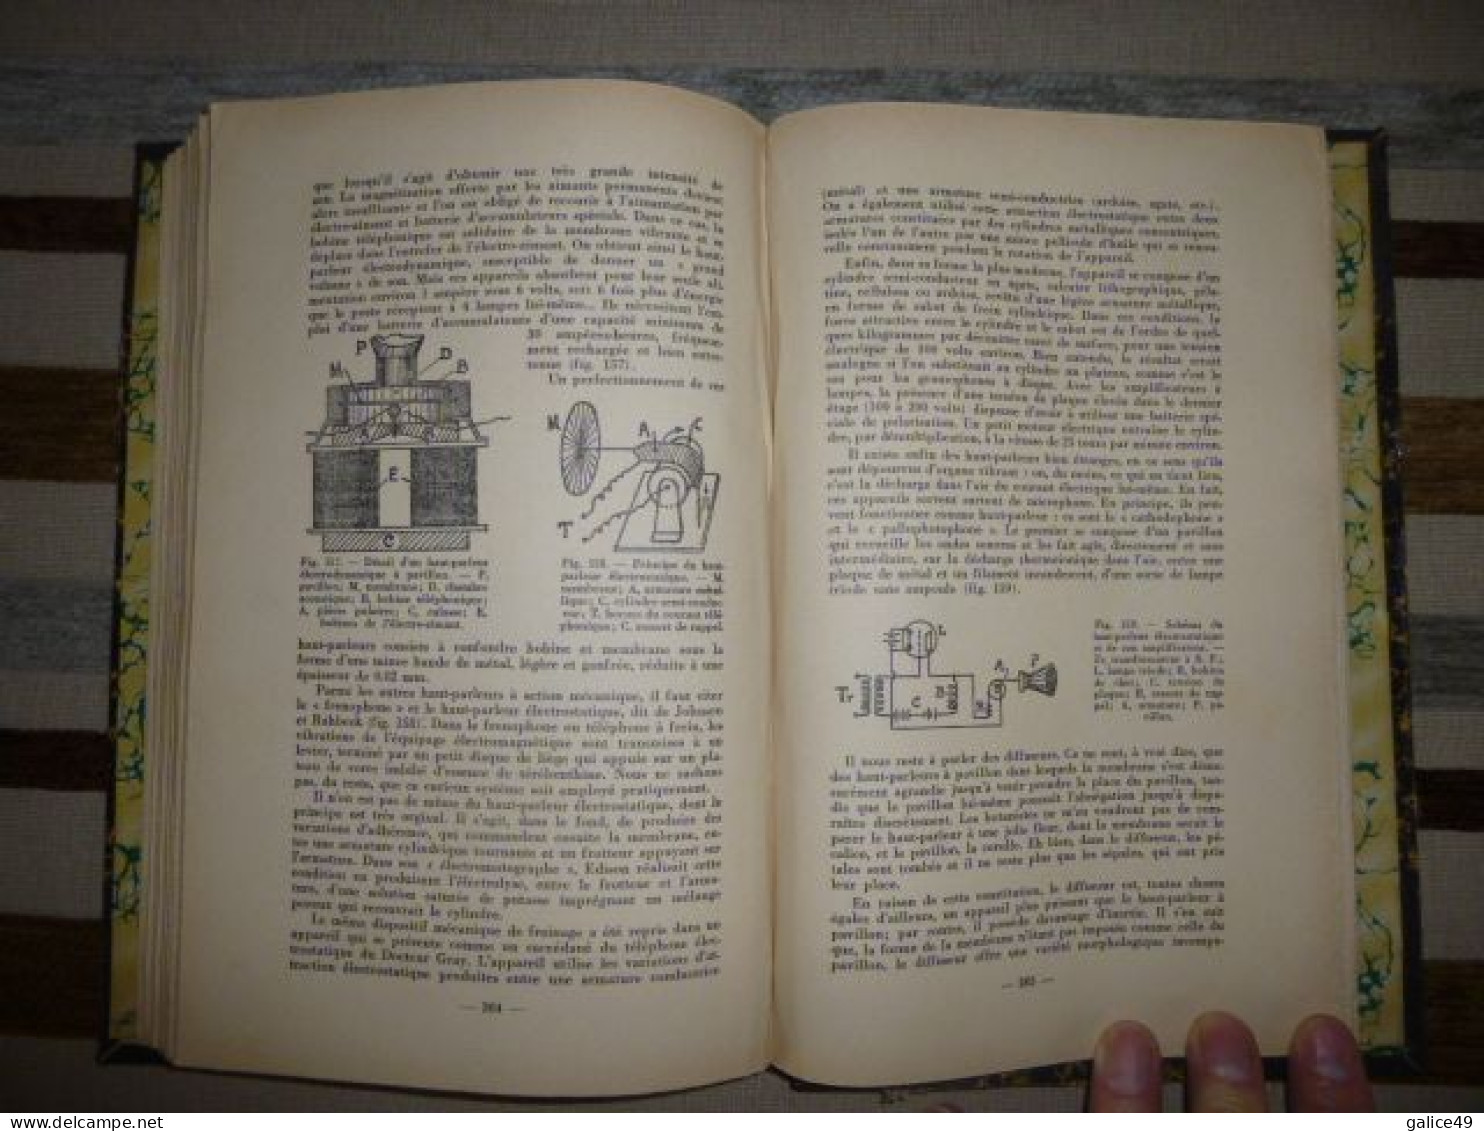 Eléments De Radioélectricité - Cours De T.S.F. - 318 Pages - Format 17cm X26 Cm - Par Michel Adam Ingénieur E.S.E - 1933 - Littérature & Schémas